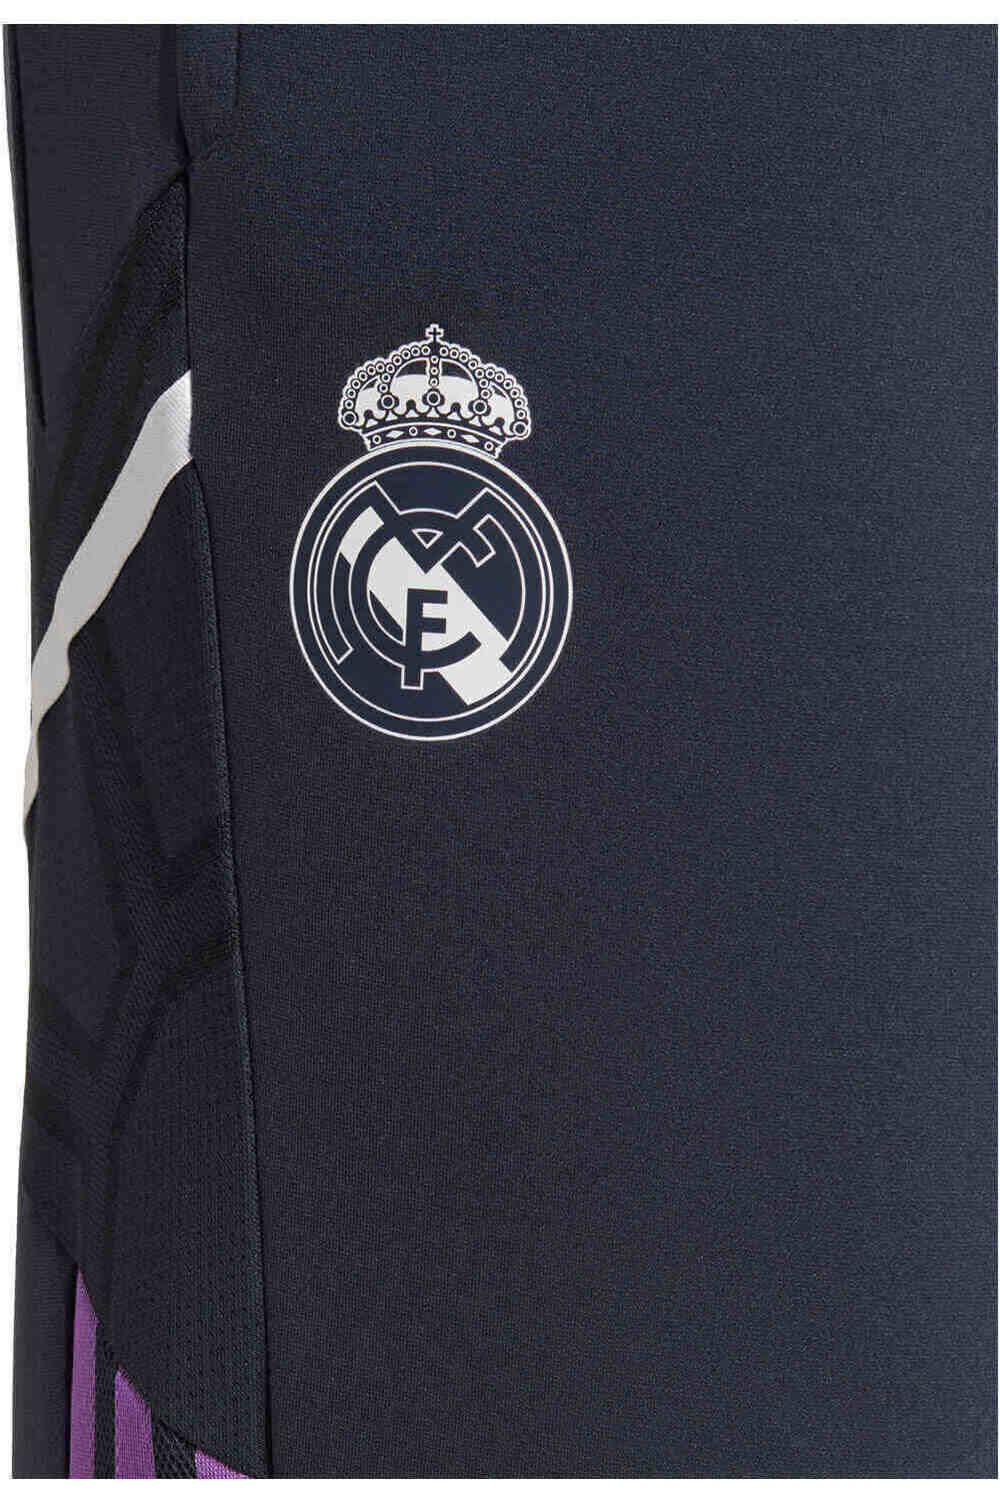 adidas pantalones largos futbol Real Madrid Condivo 22 entrenamiento vista trasera